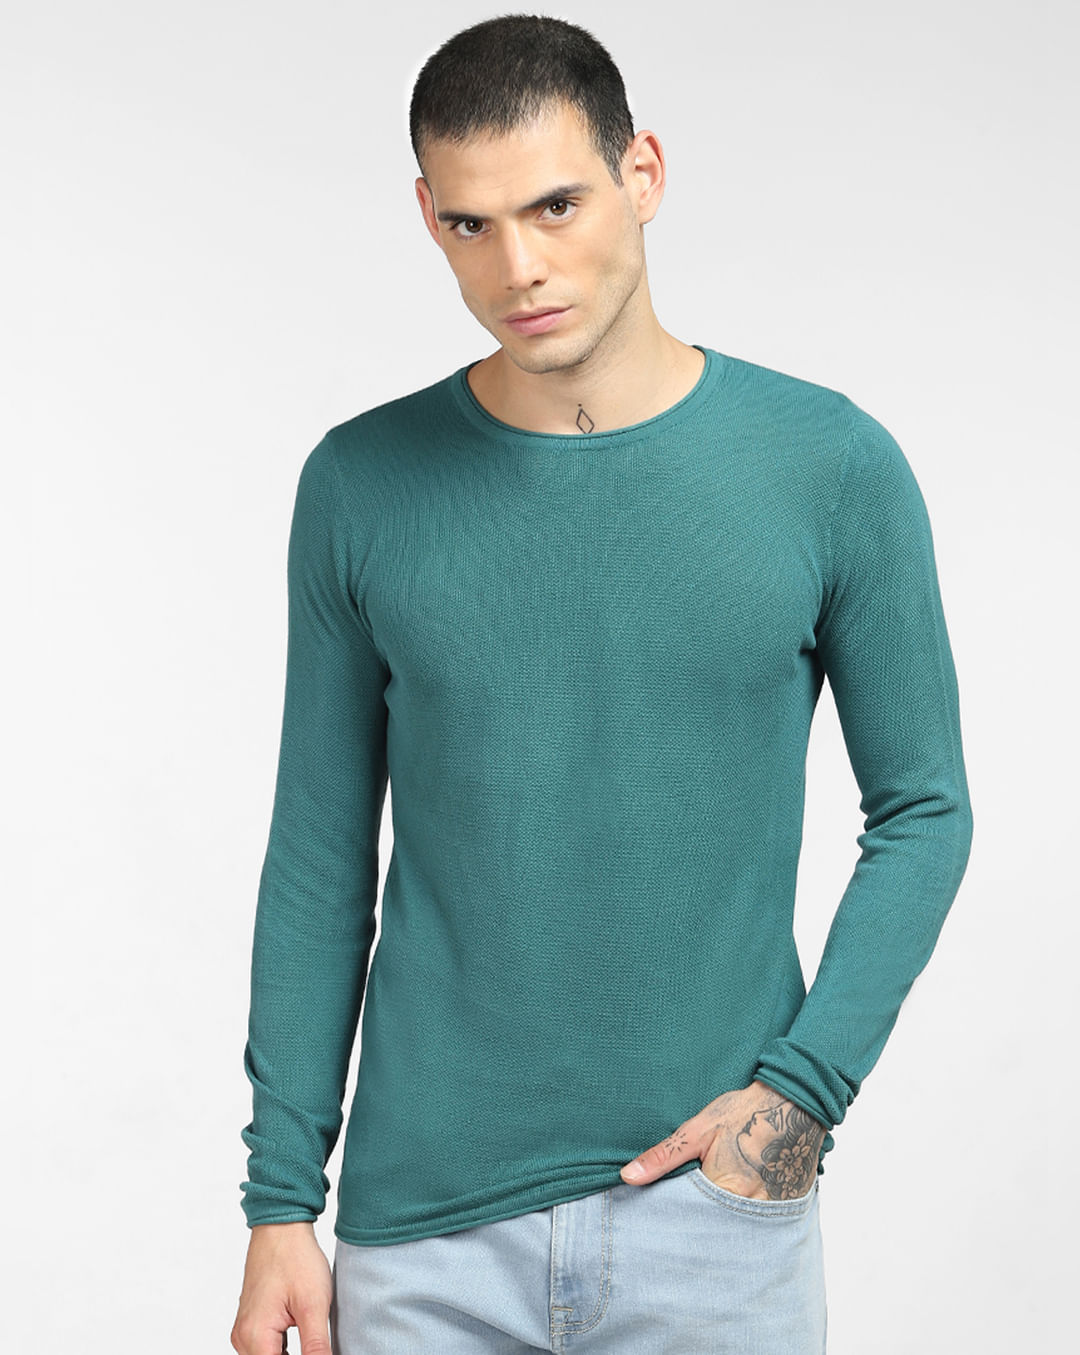 Buy Green Pullover for Men